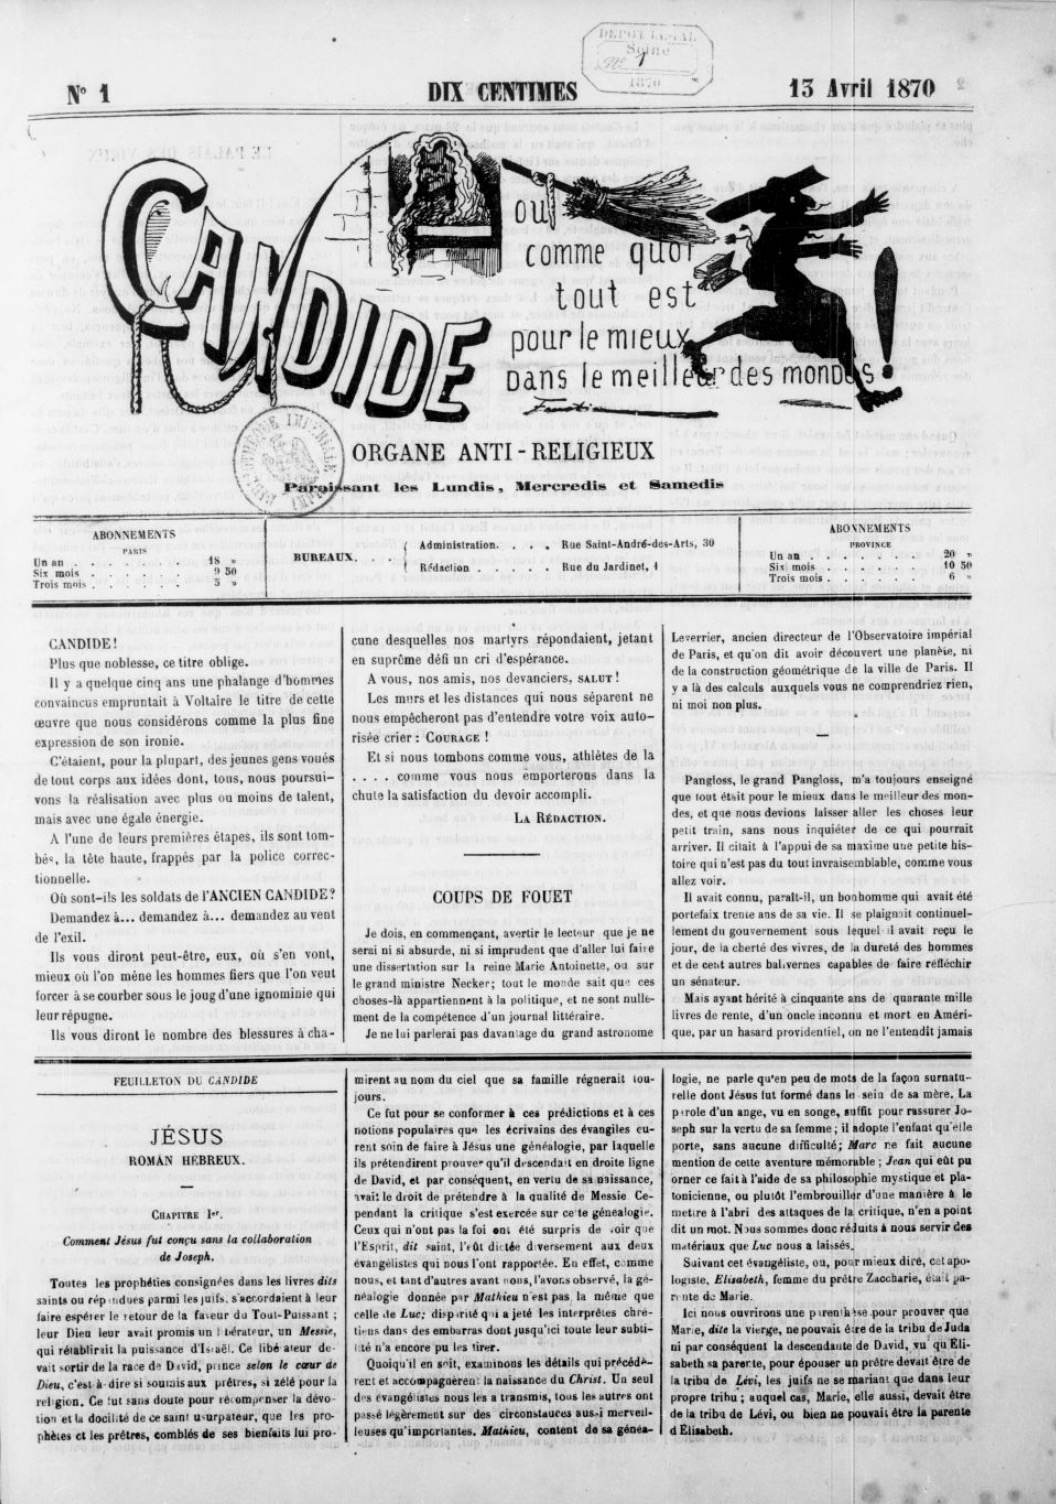 Candide ou comme quoi tout est pour le mieux dans le meilleur des mondes ! (1870)